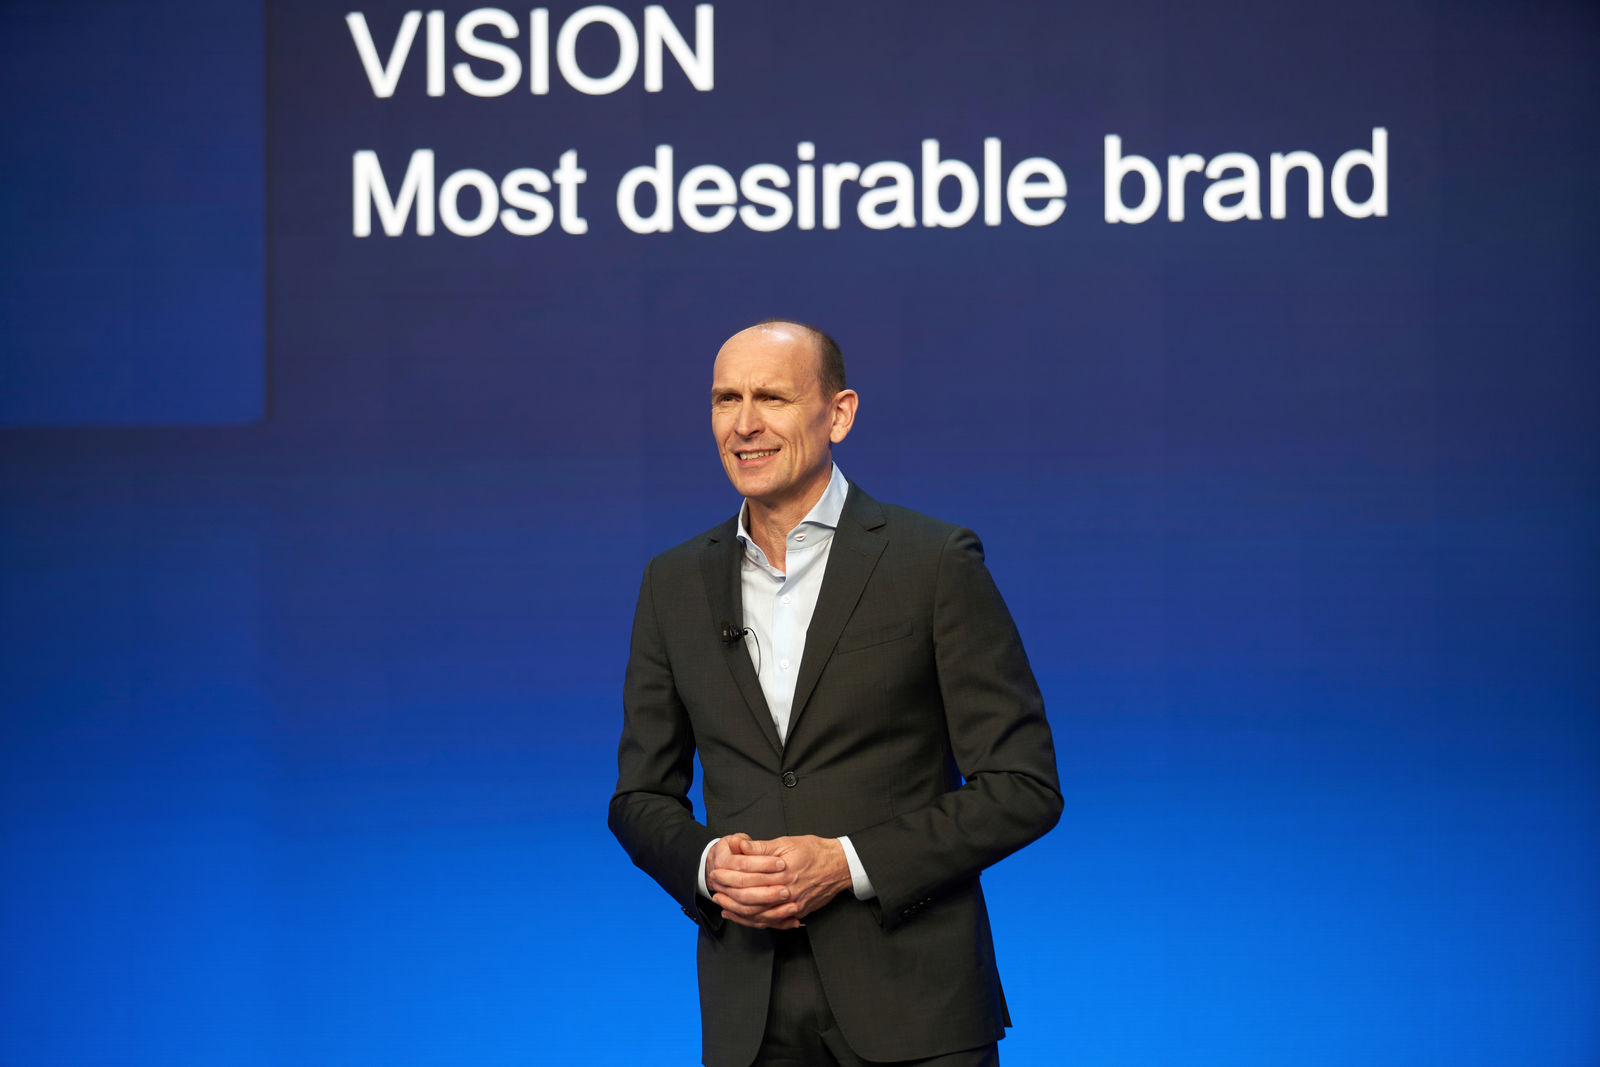 Jahrespressekonferenz der Marke Volkswagen 2021